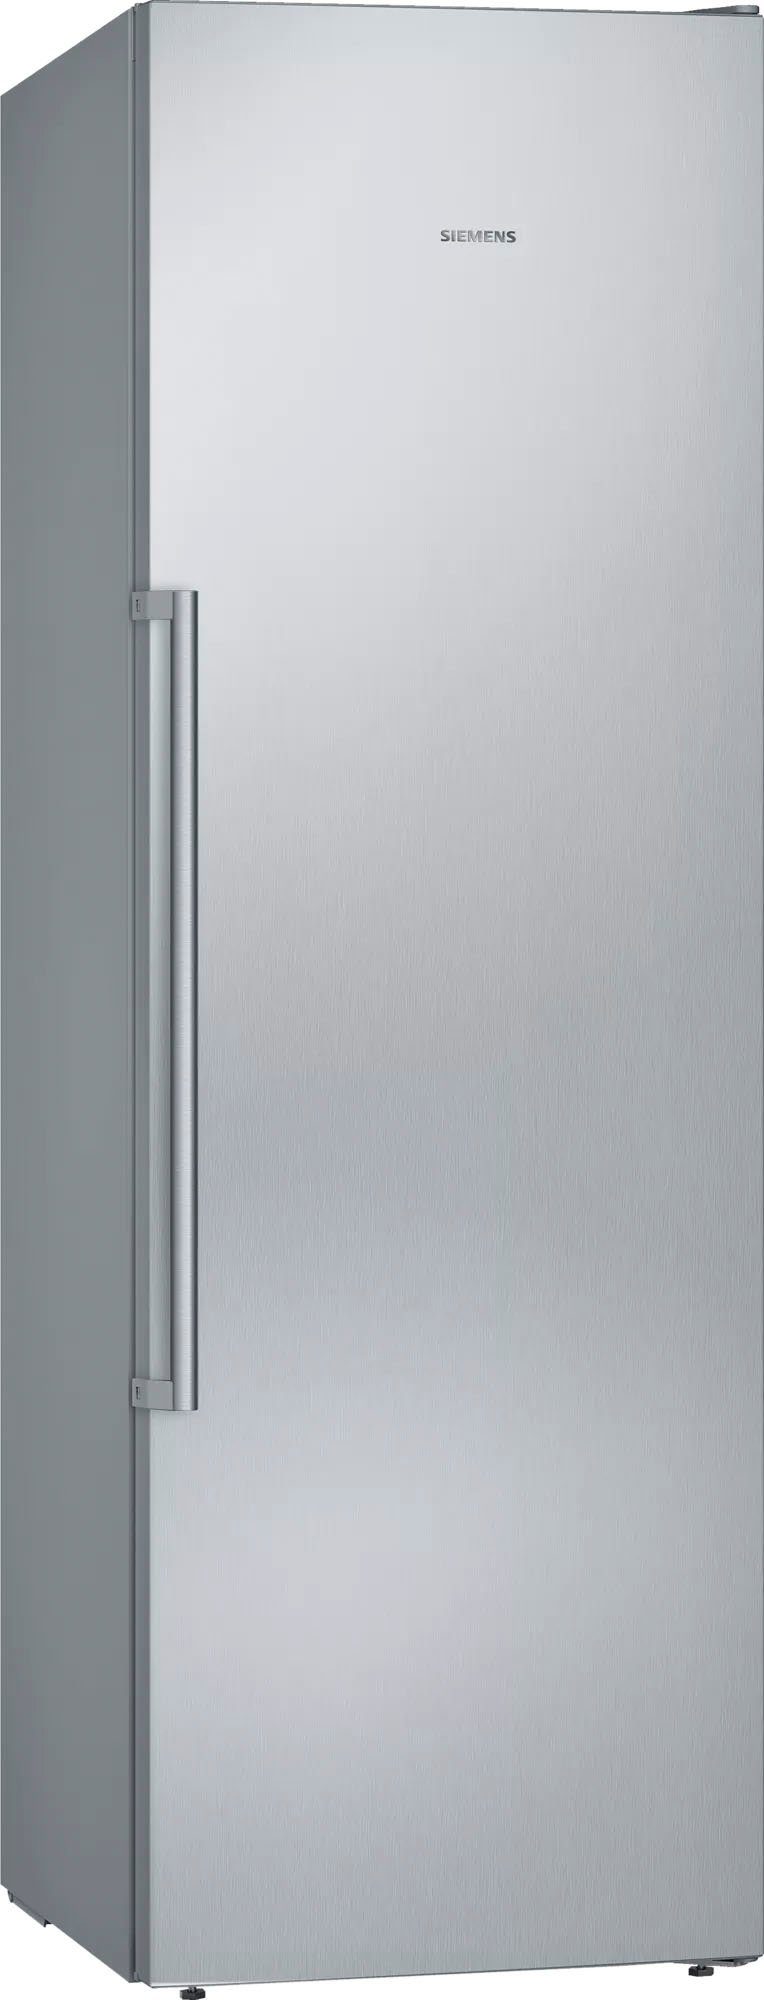 SIEMENS Gefrierschrank iQ500 GS36NAIDP, 186 cm hoch, 60 cm breit